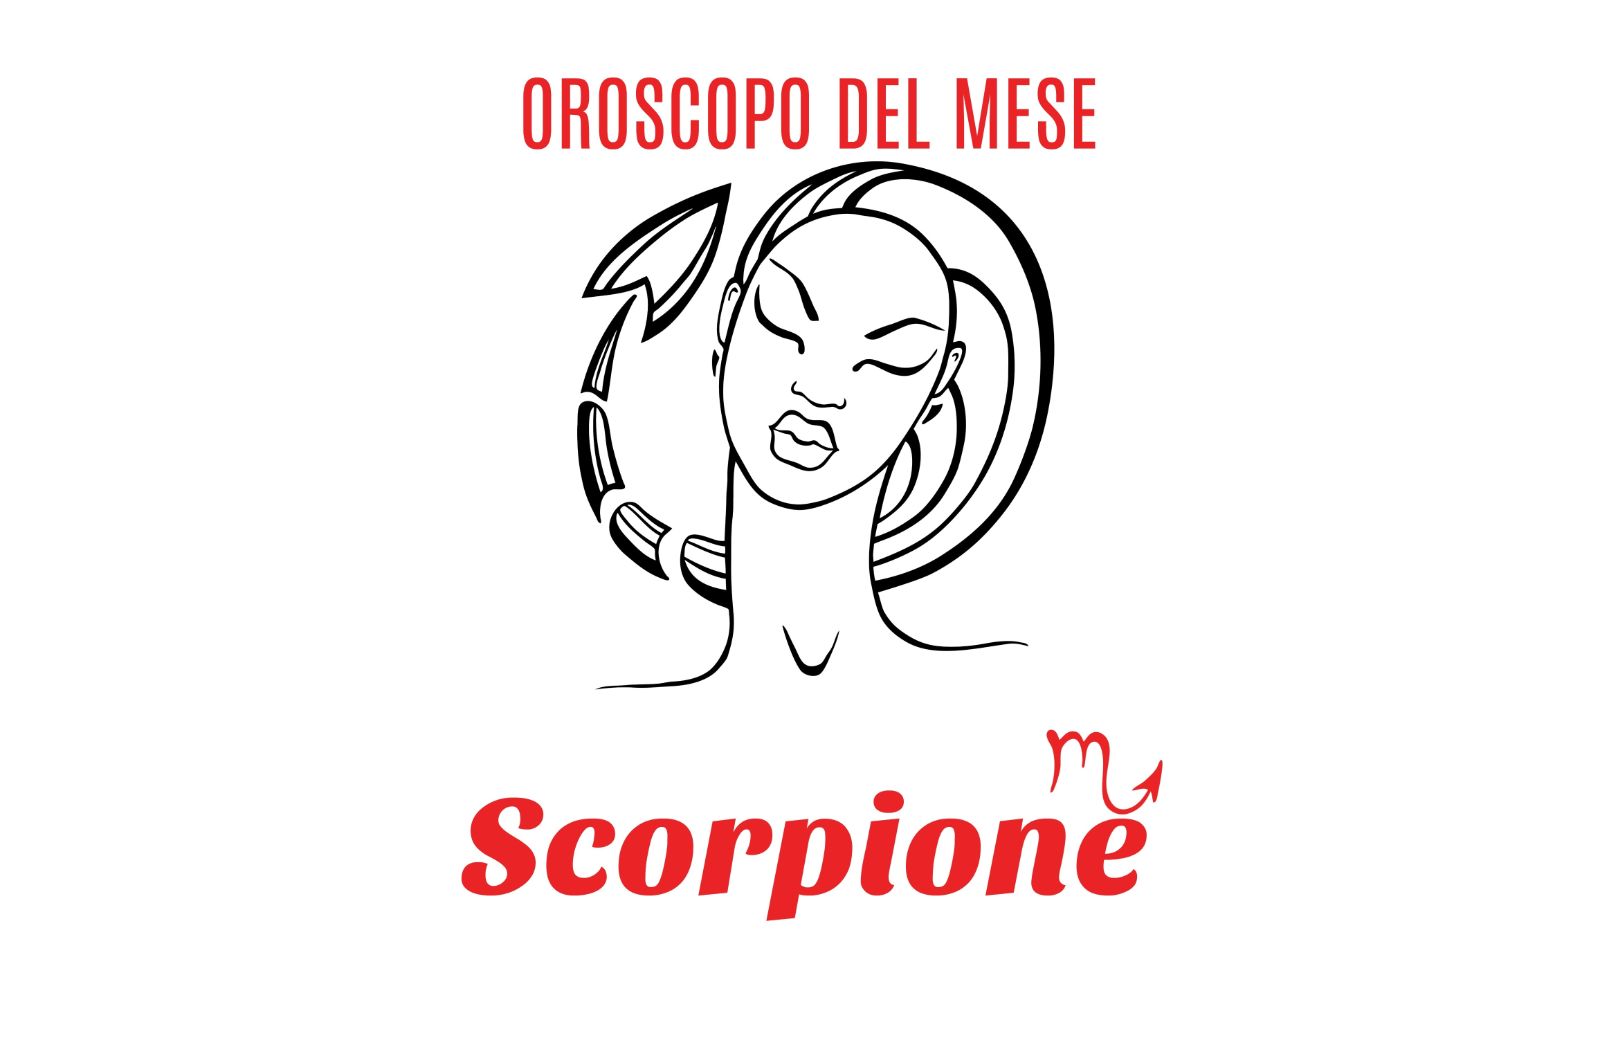 Oroscopo del mese - Scorpione: Giugno 2019